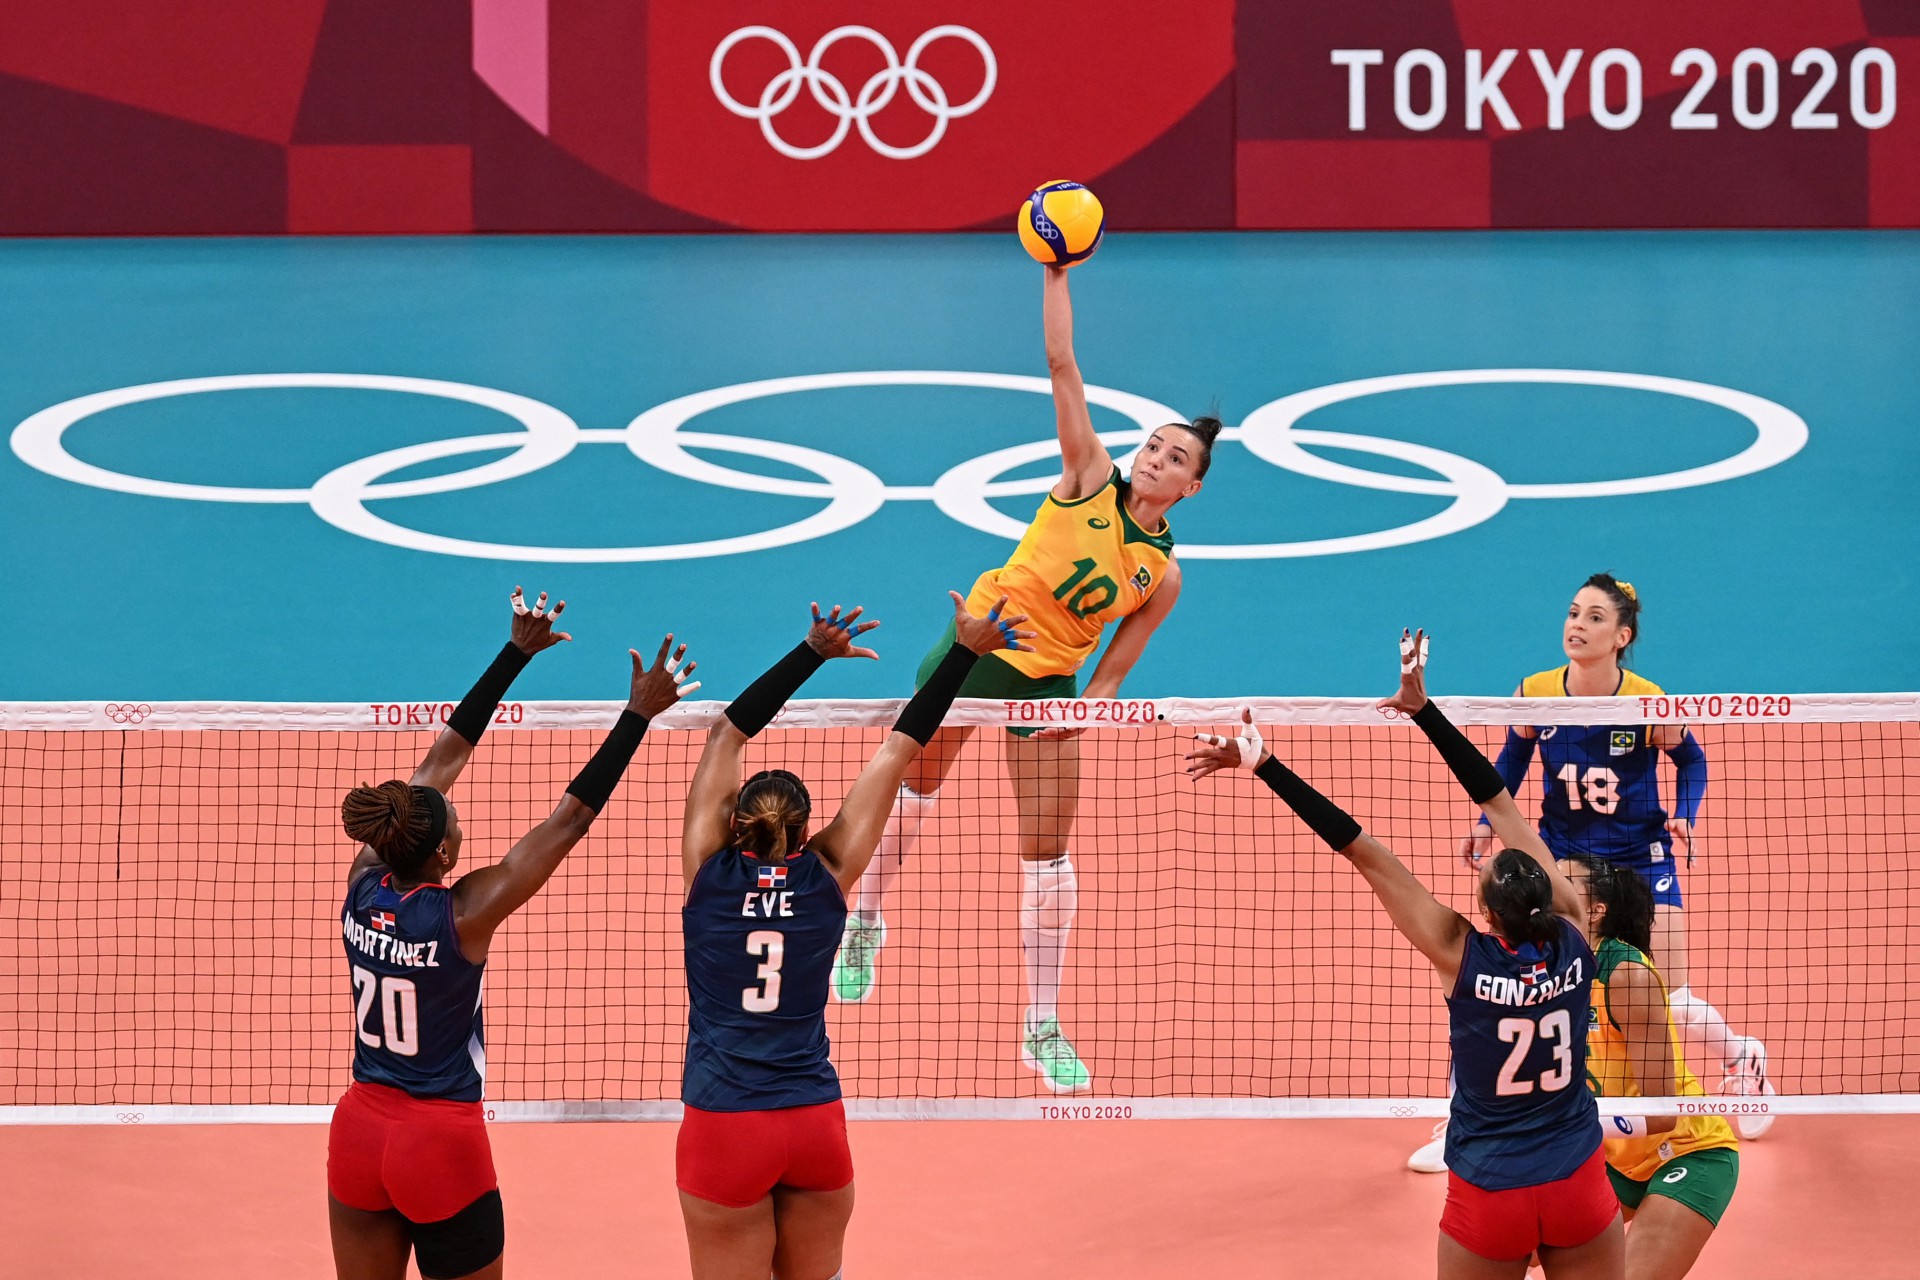 De virada, Brasil vence República Dominicana no vôlei feminino no tie-break